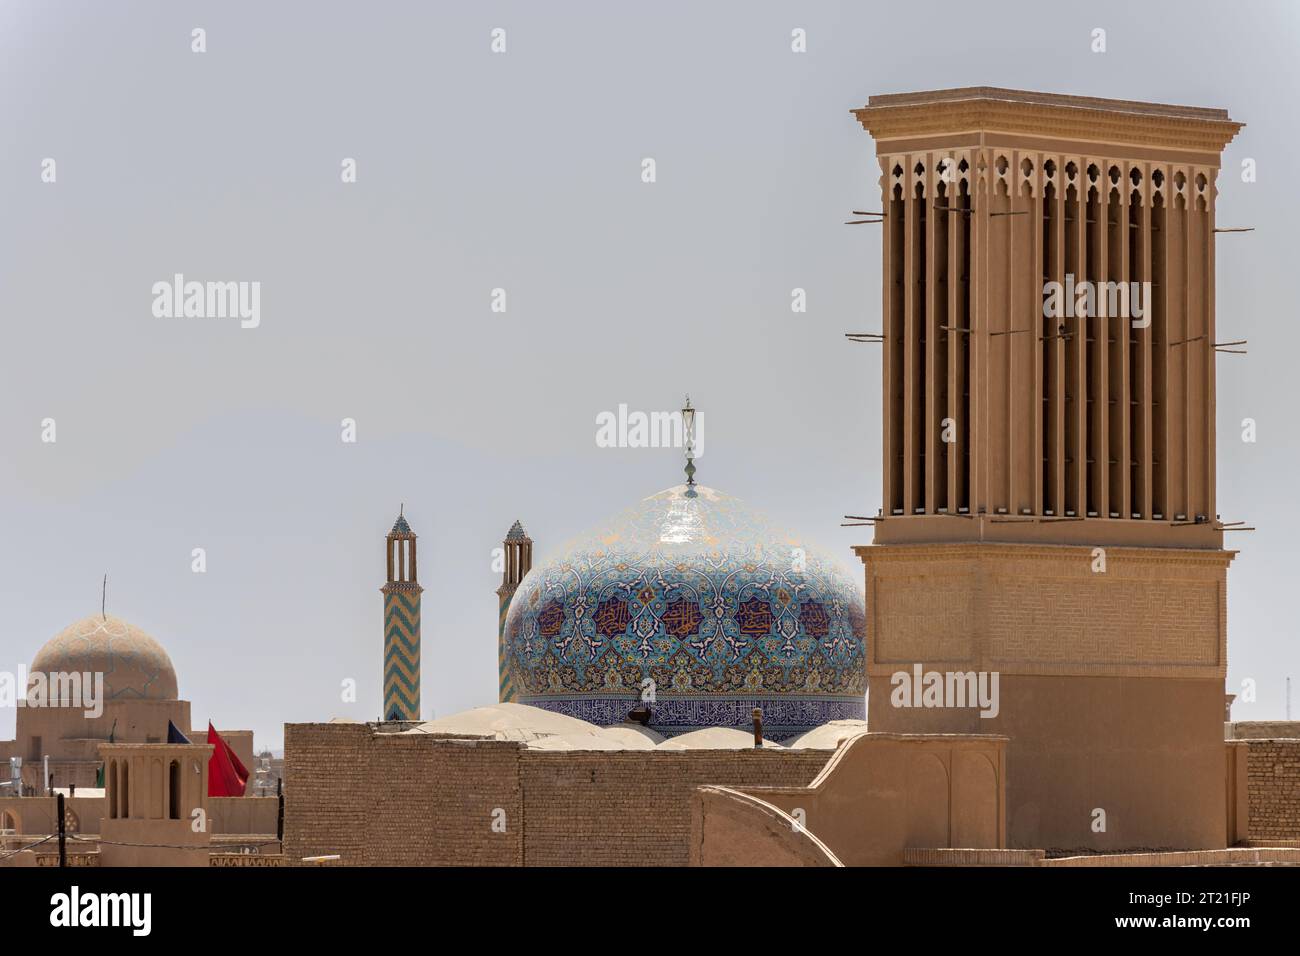 Vista generale della città di Yazd, Iran. Dal 2017, la storica città di Yazd è riconosciuta come patrimonio dell'umanità dall'UNESCO Foto Stock